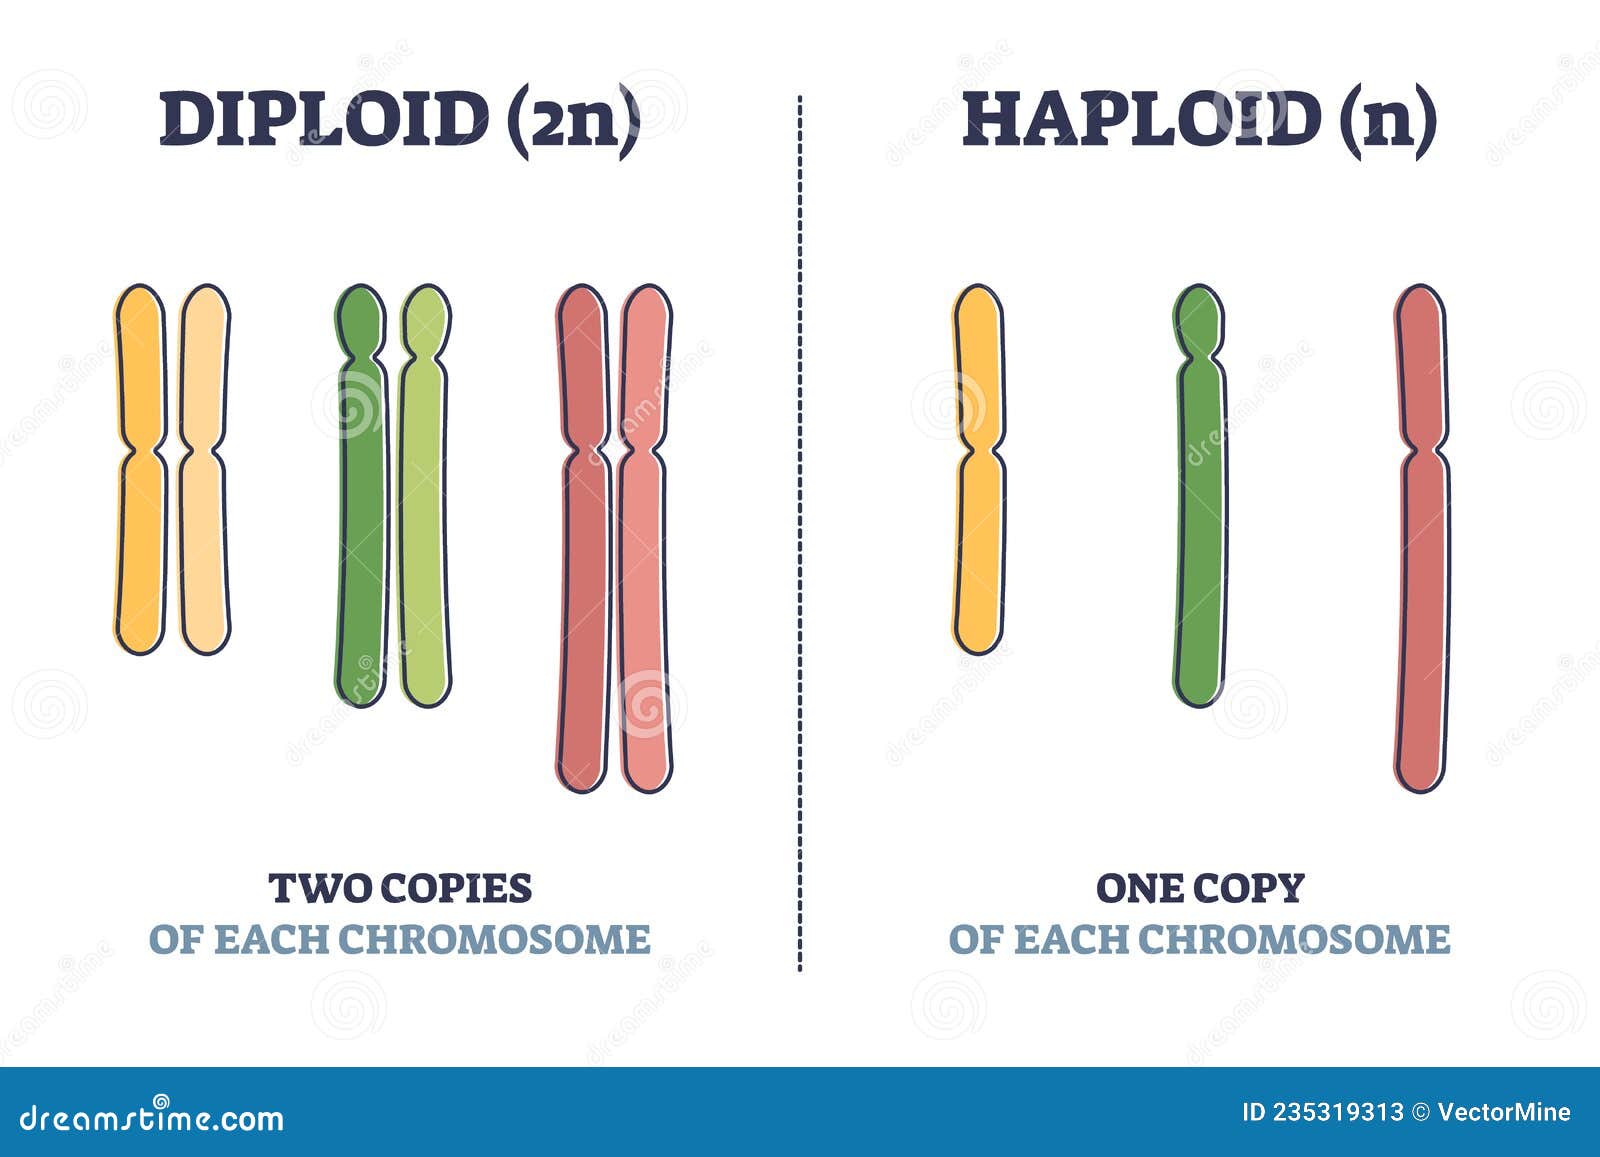 diploid vs haploid as complete chromosome sets comparison outline diagram